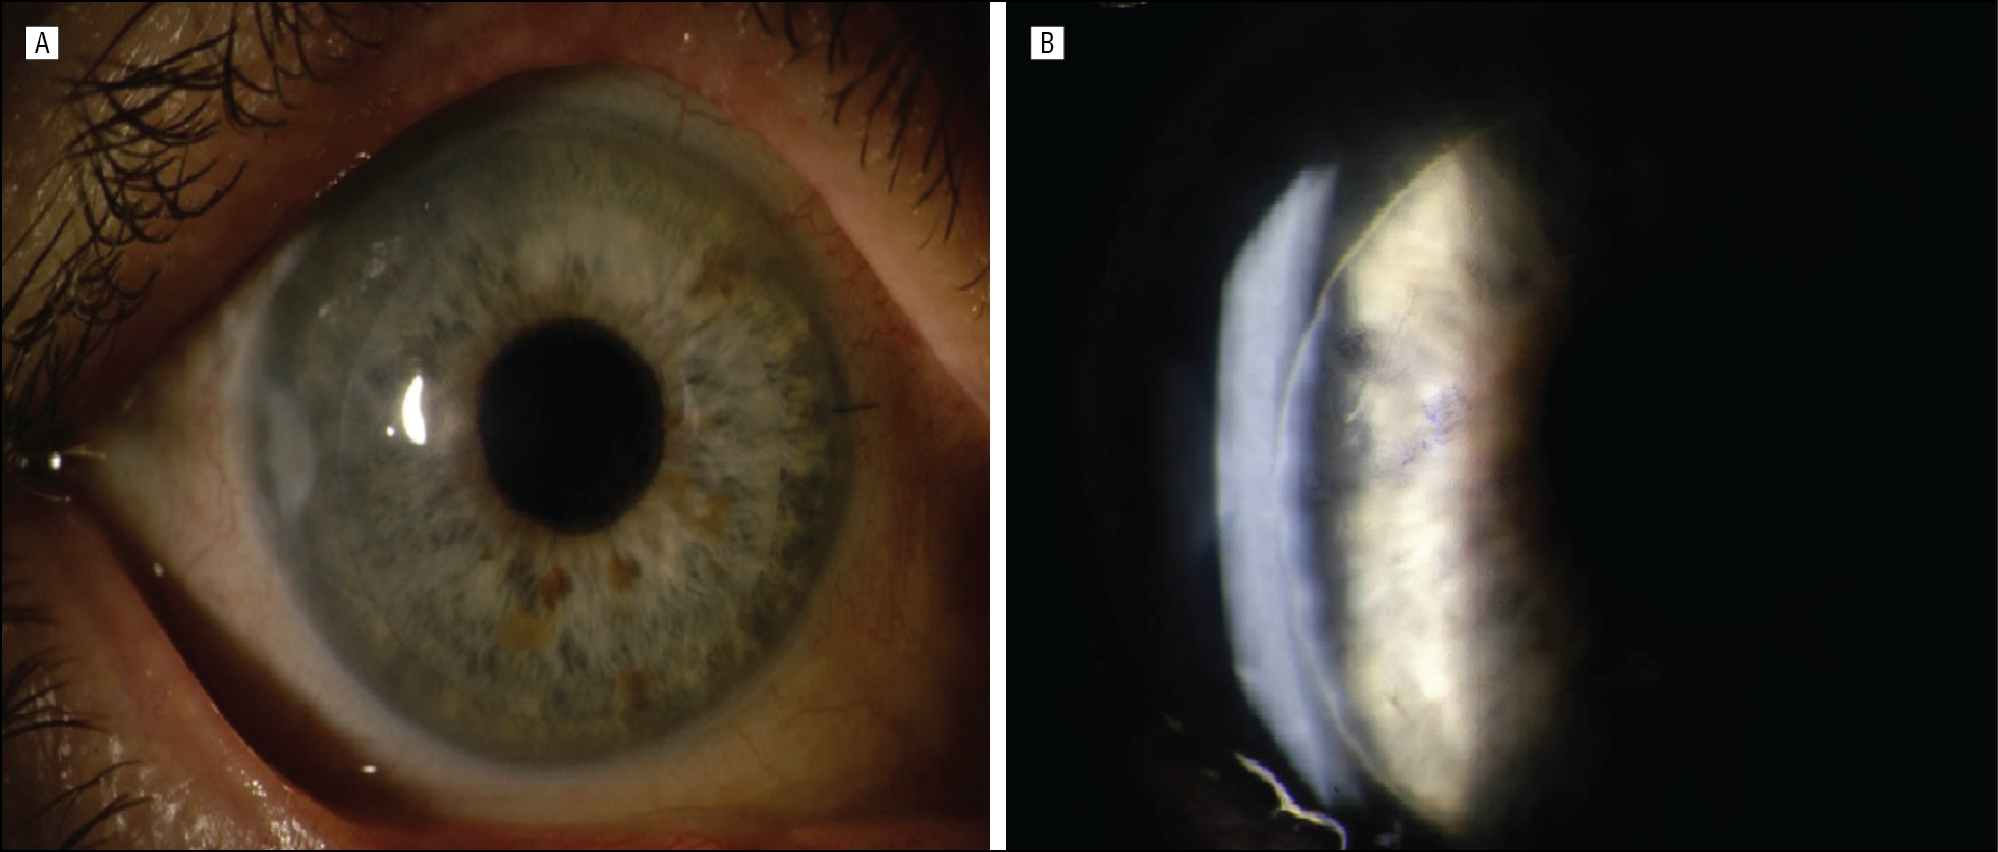 Заболевания роговицы глаза: причины, симптомы, лечение - "здоровое око"